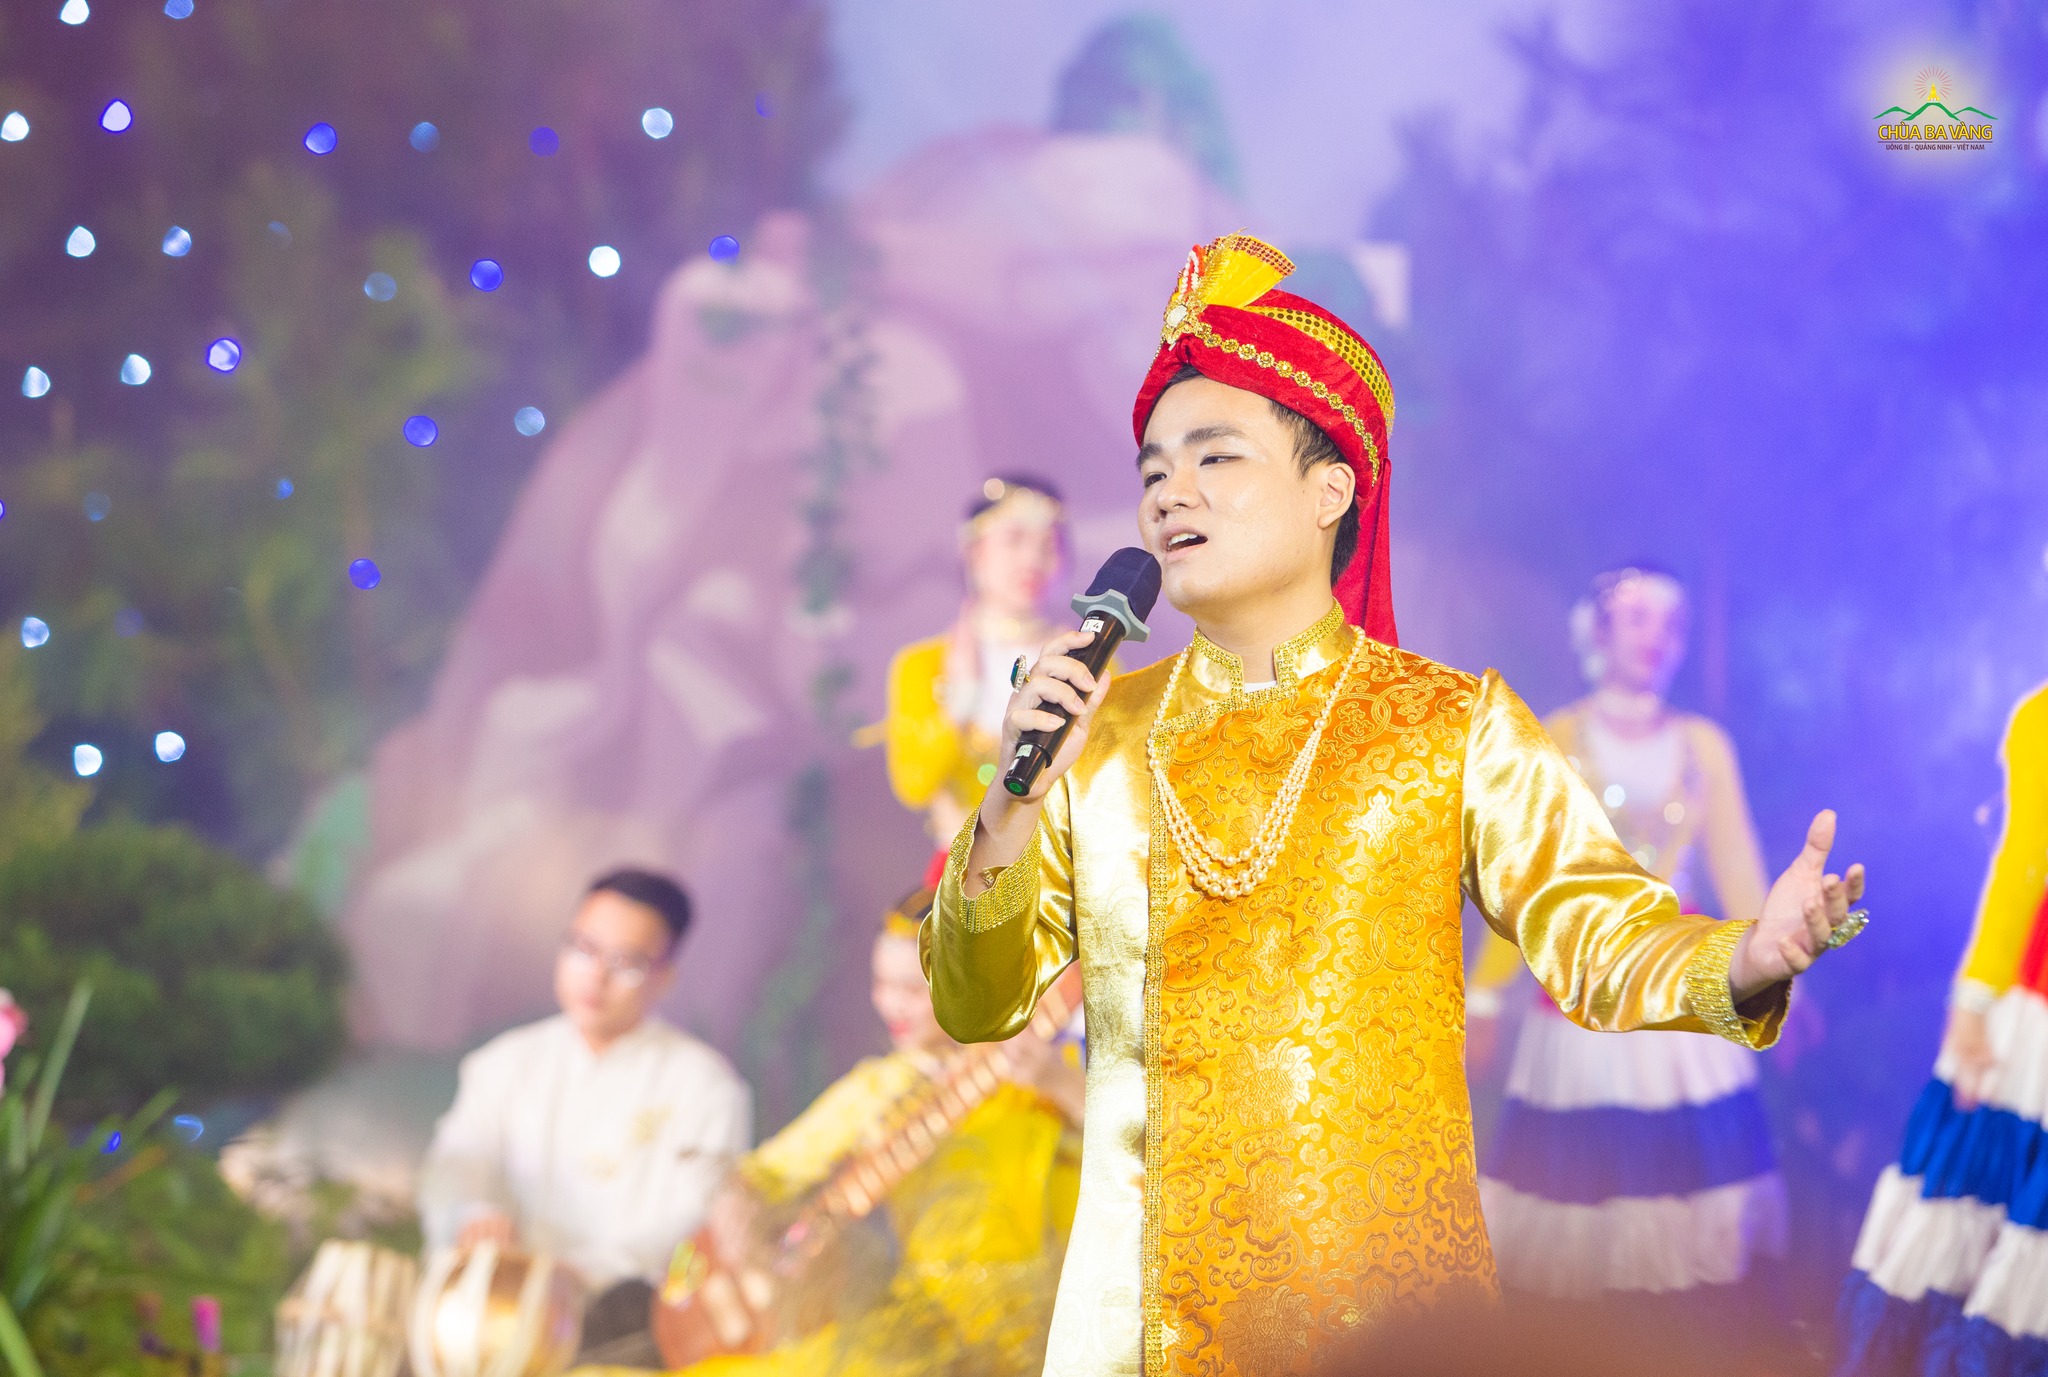 Ca sĩ Hoàng Tú ca mừng trong chương trình kỷ niệm ngày Đức Phật thành đạo